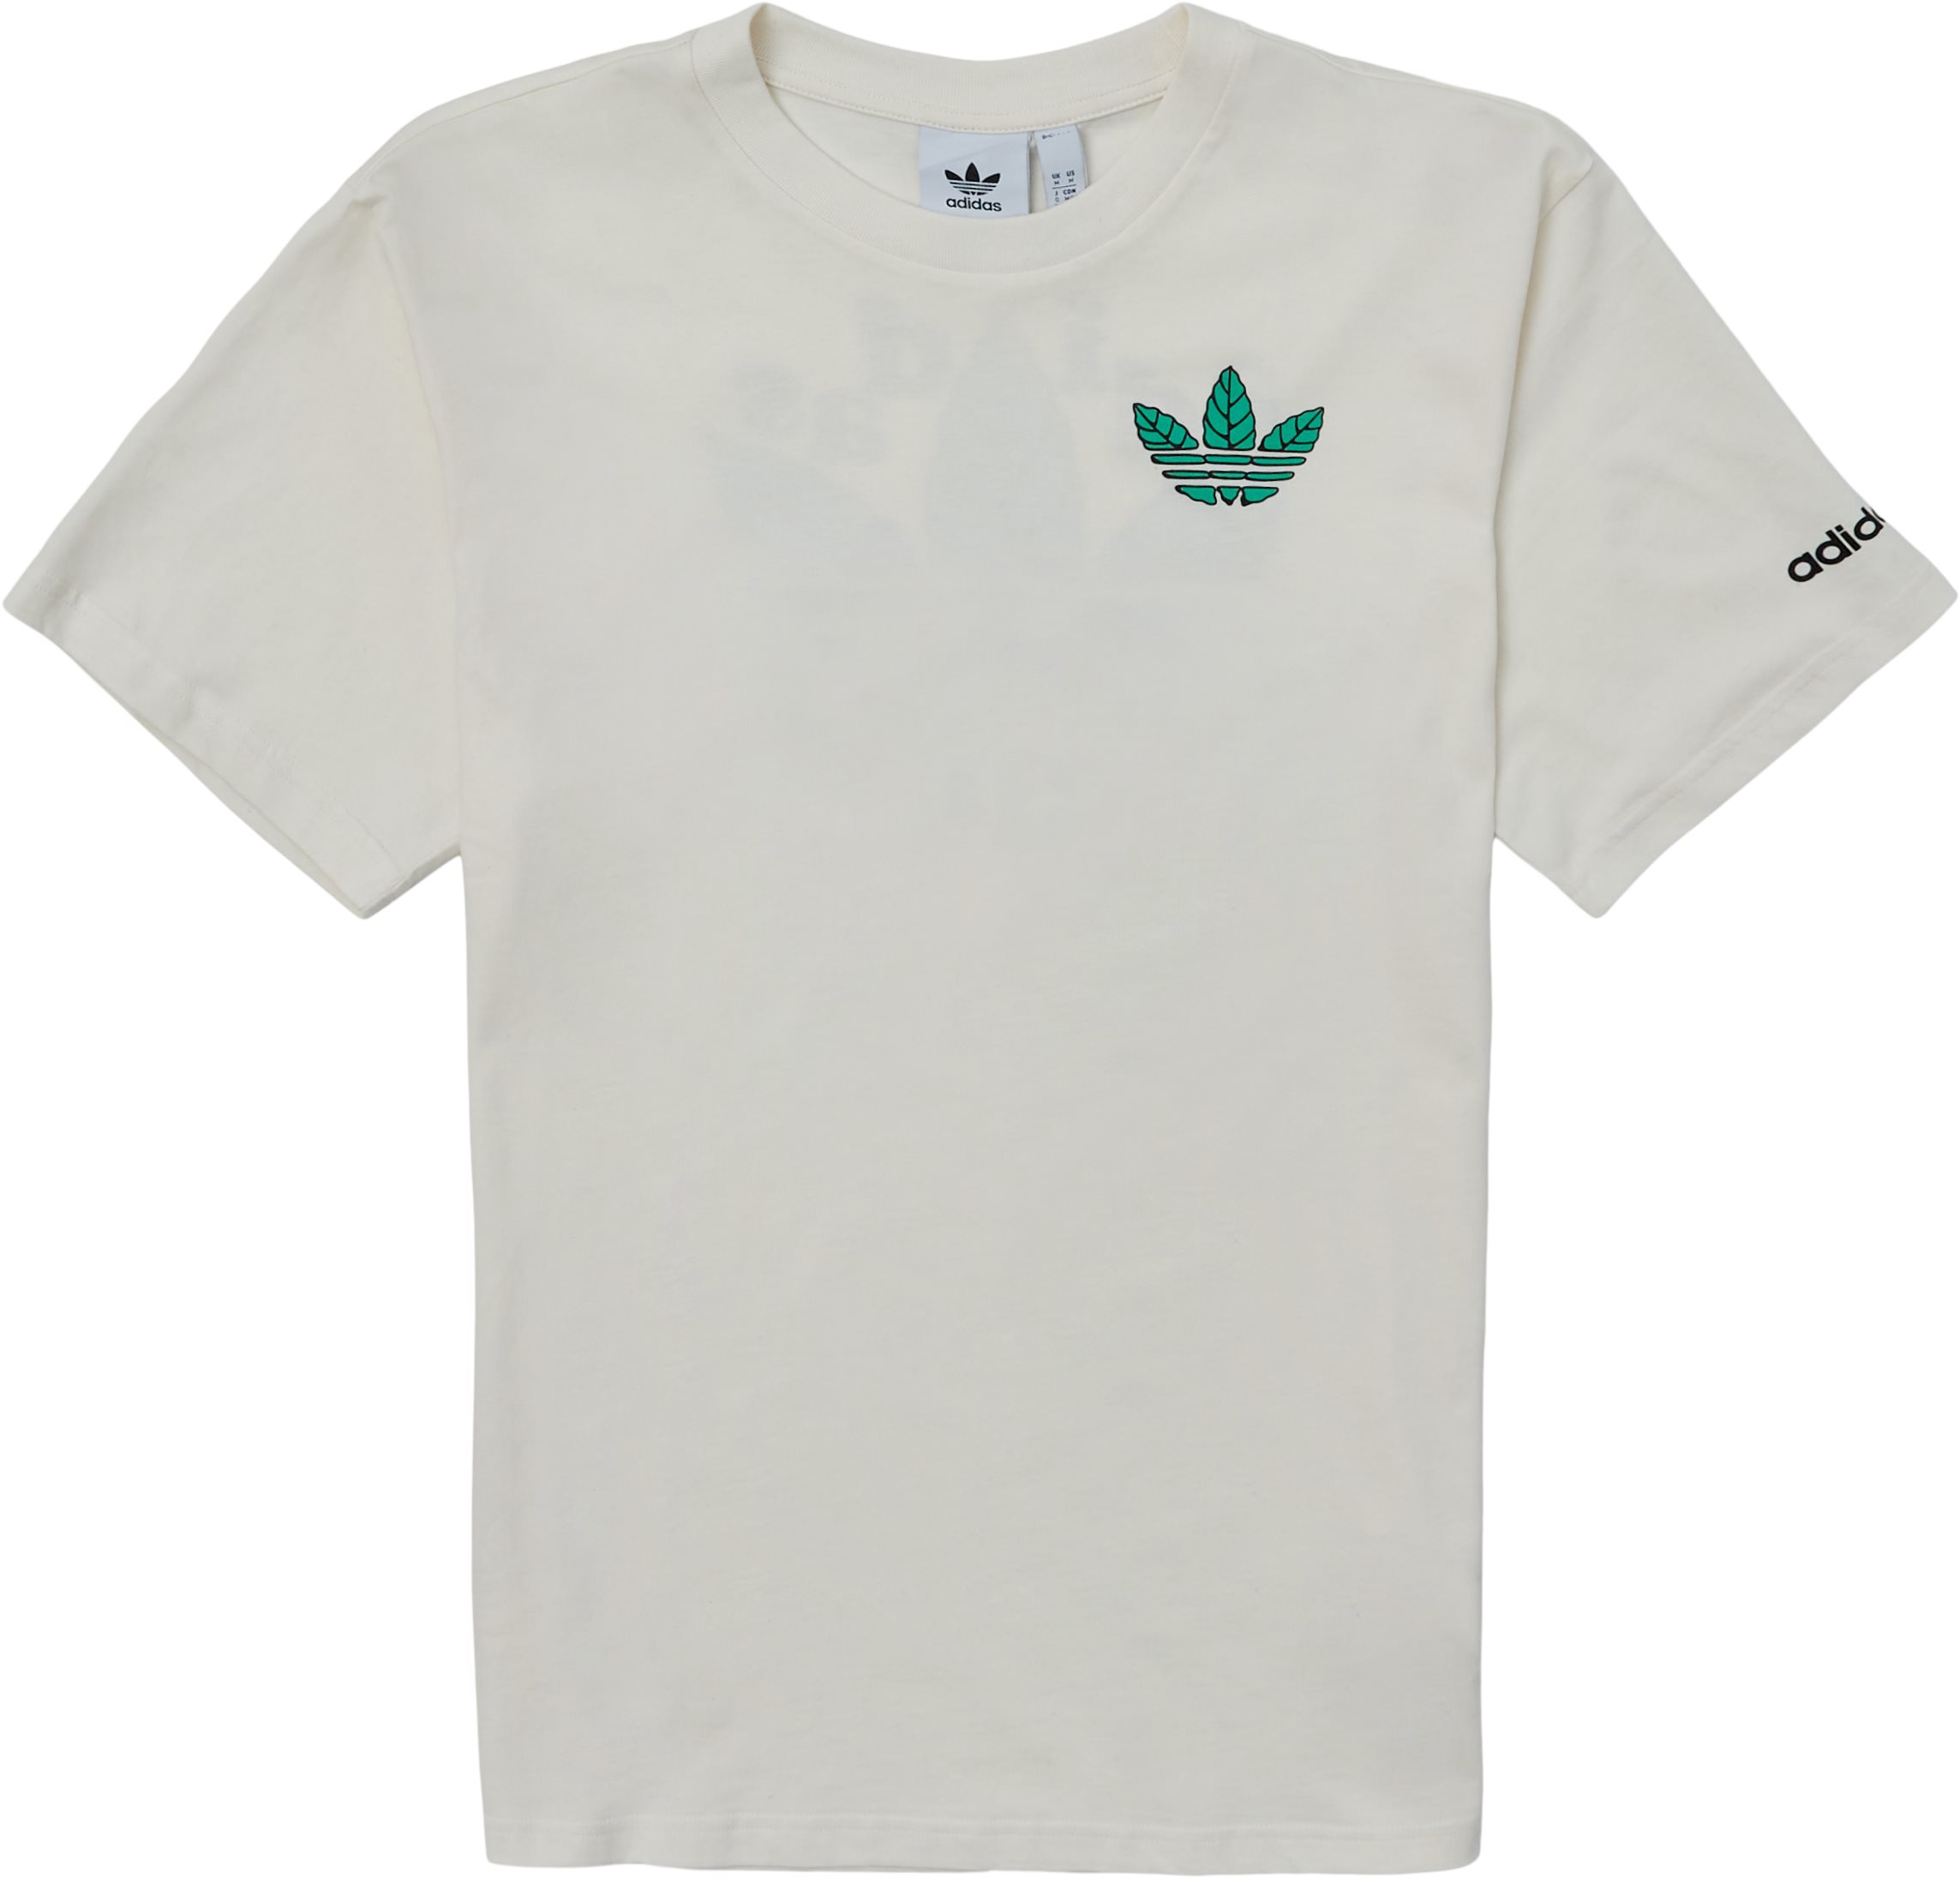 Trefoil Leaves - T-shirts - Regular fit - Hvid